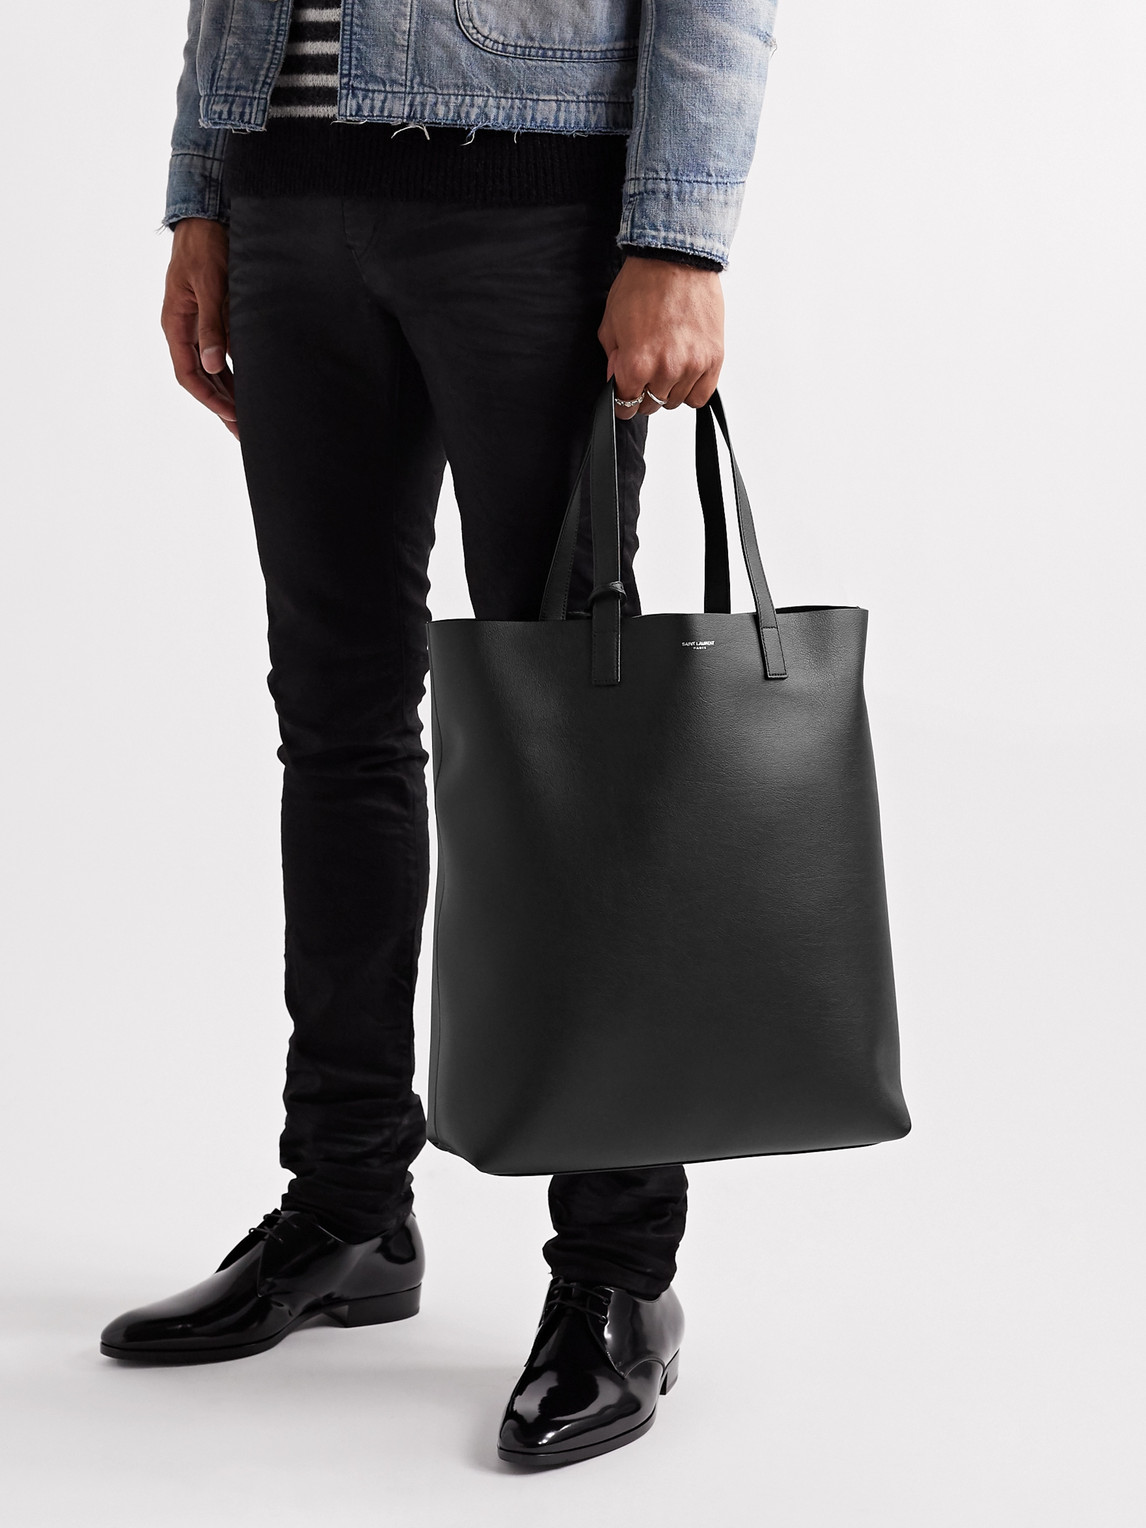 Saint Laurent Branded Leather Shopper Bag In Black | ModeSens